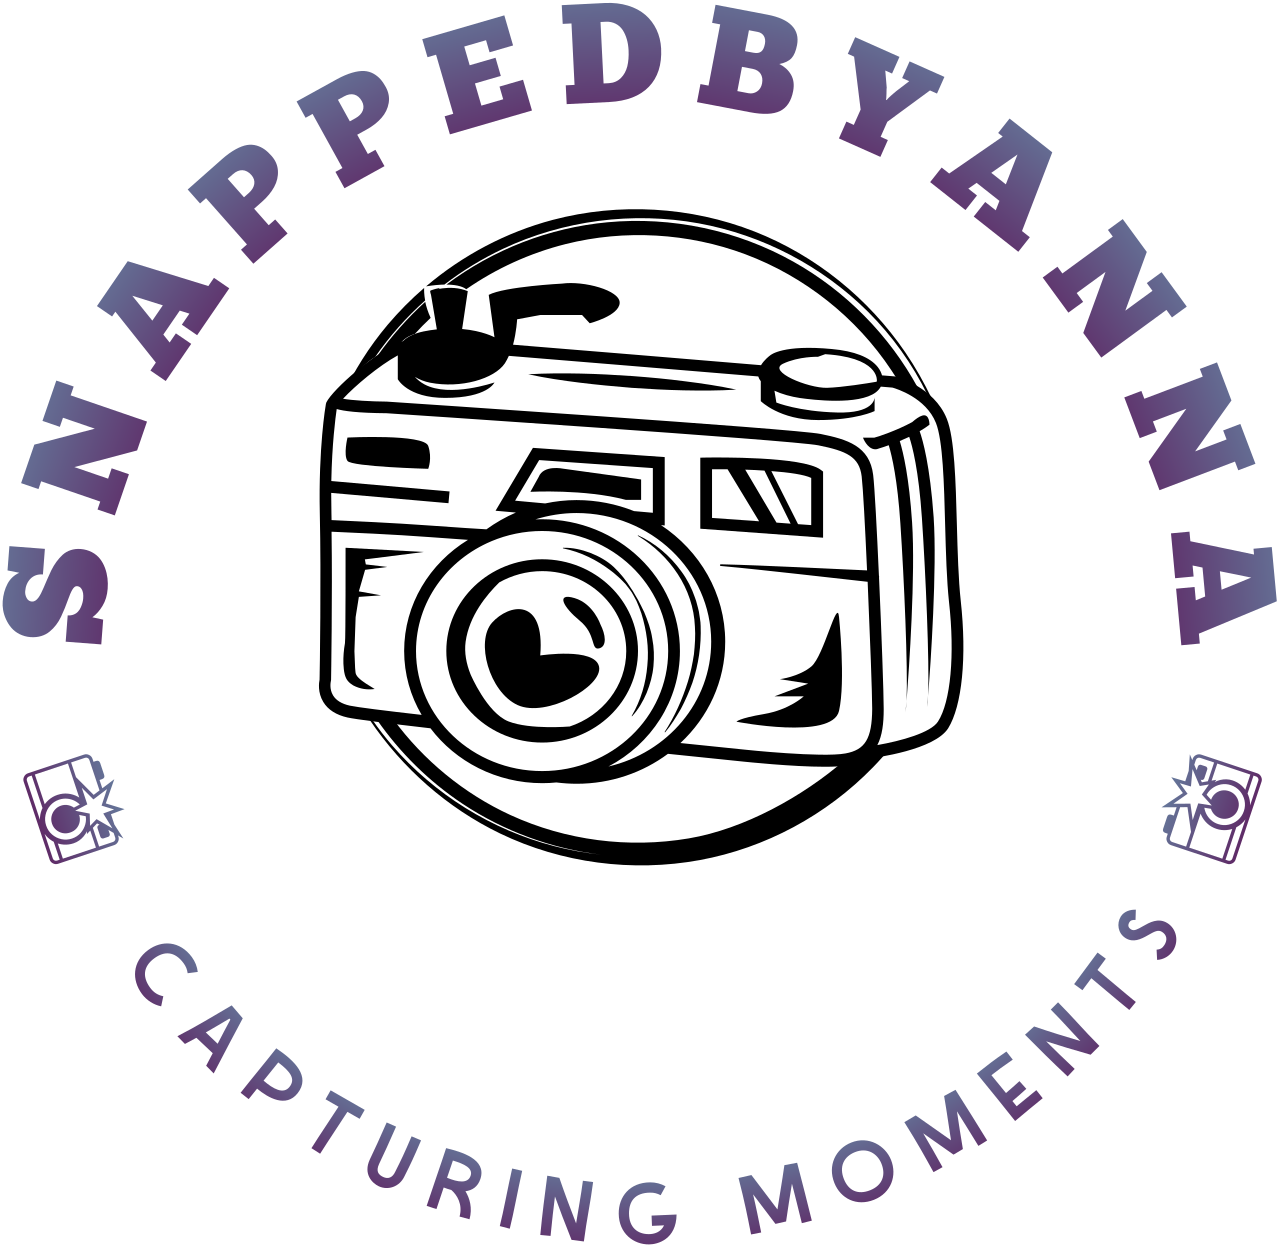 SNAPPEDBYANNA's logo